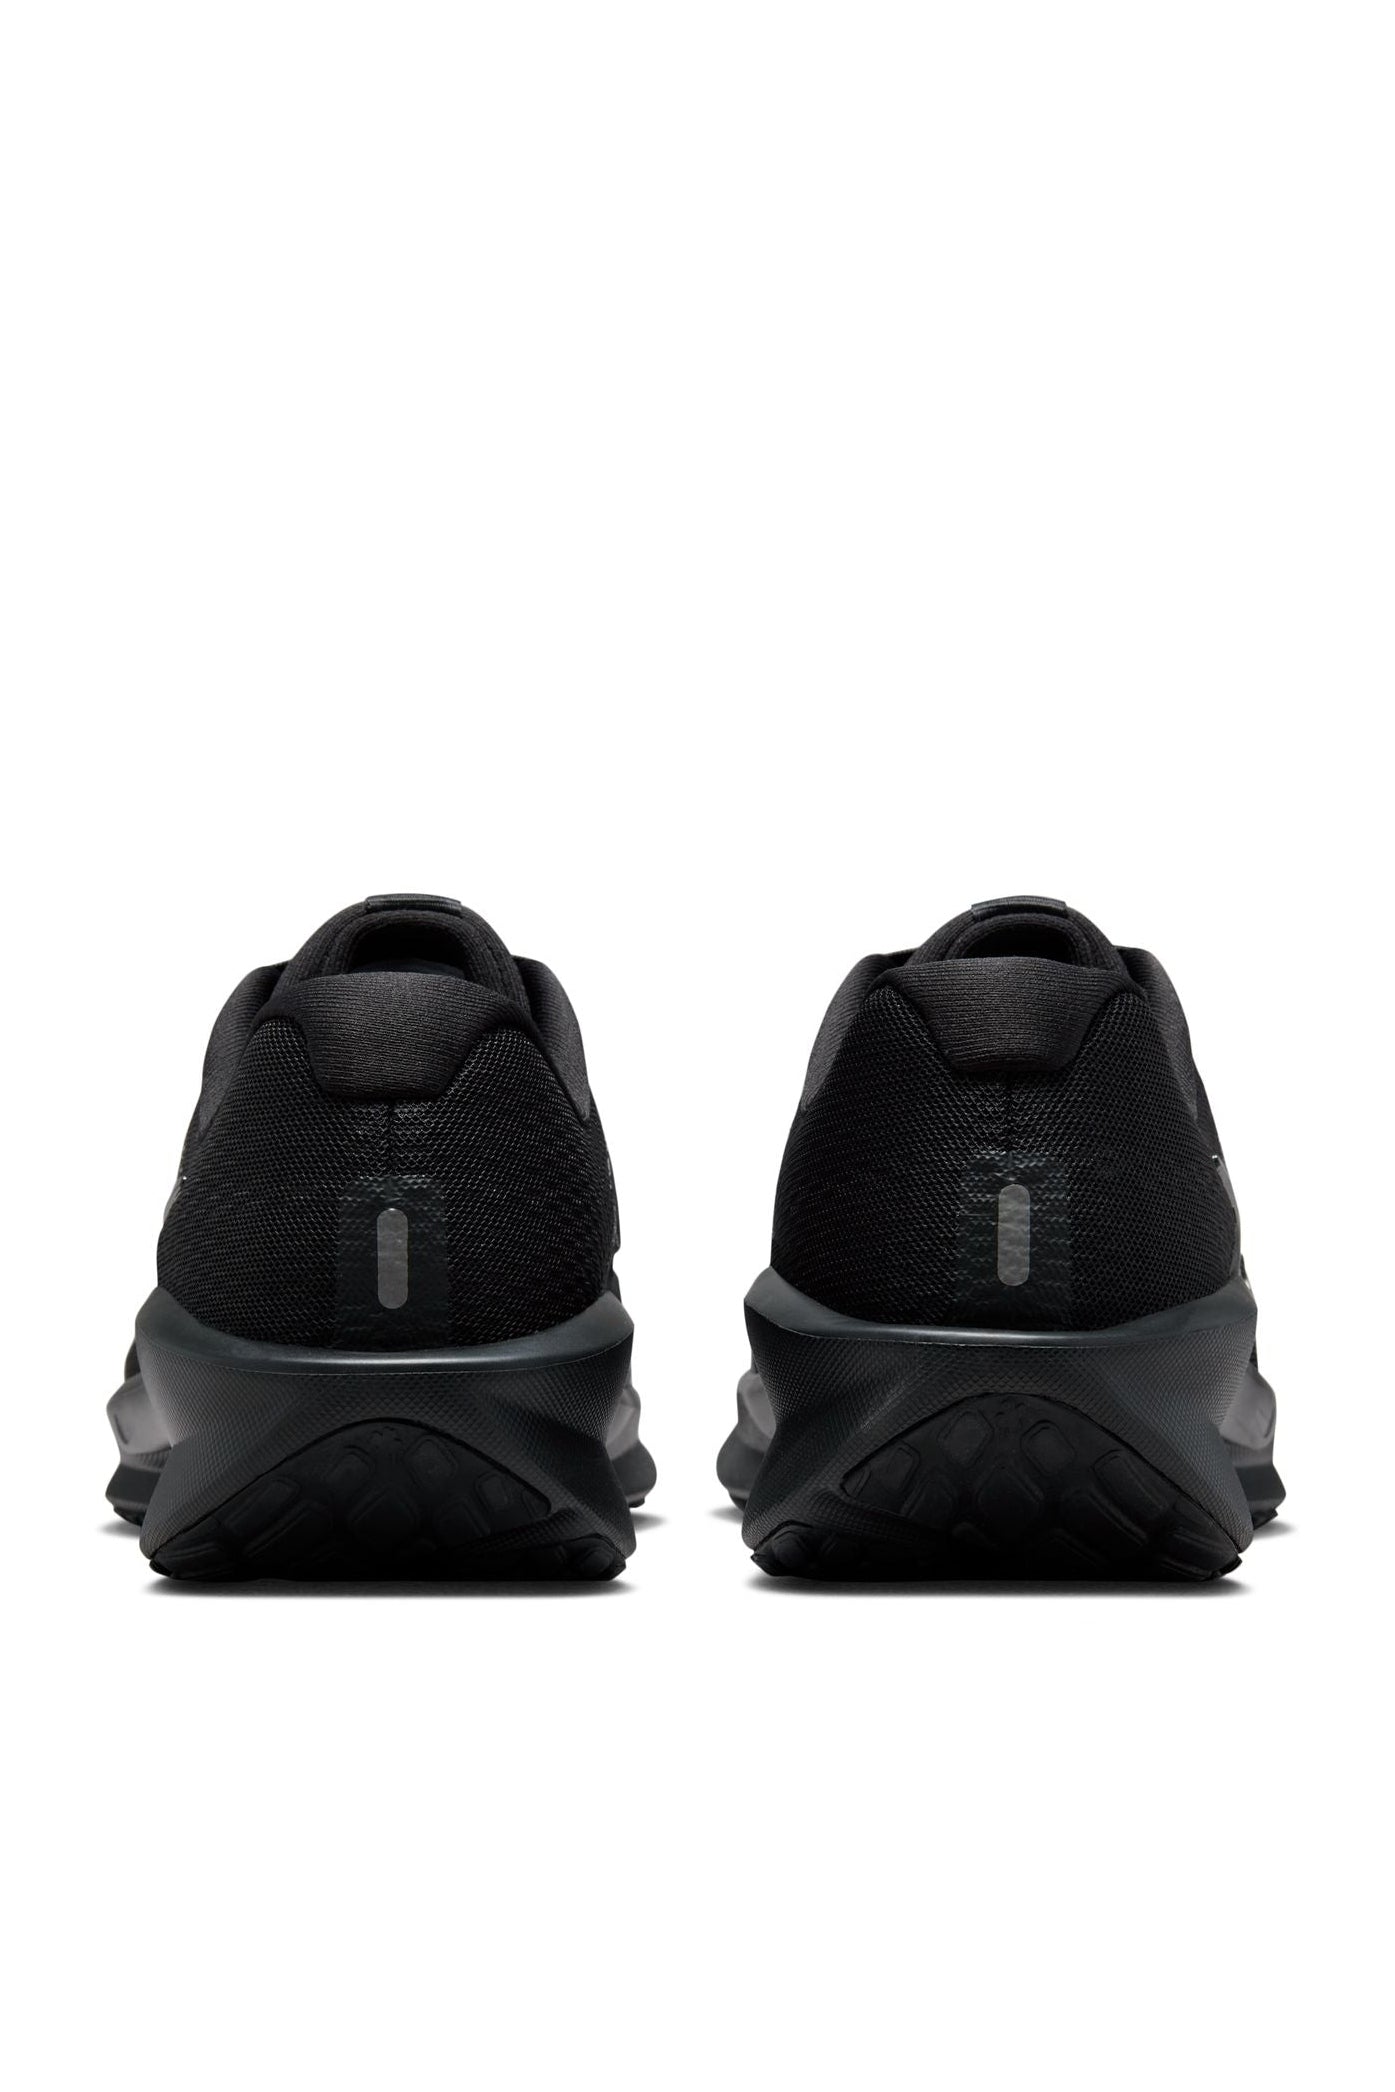 נעליים מבית המותג NIKE בעלות מדרס פנימי רך במיוחד שעוטף את הרגל בנוחות בלתי מתפשרת. סולייה חיצונית עמידה שמספקת אחיזה מלאה בקרקע.